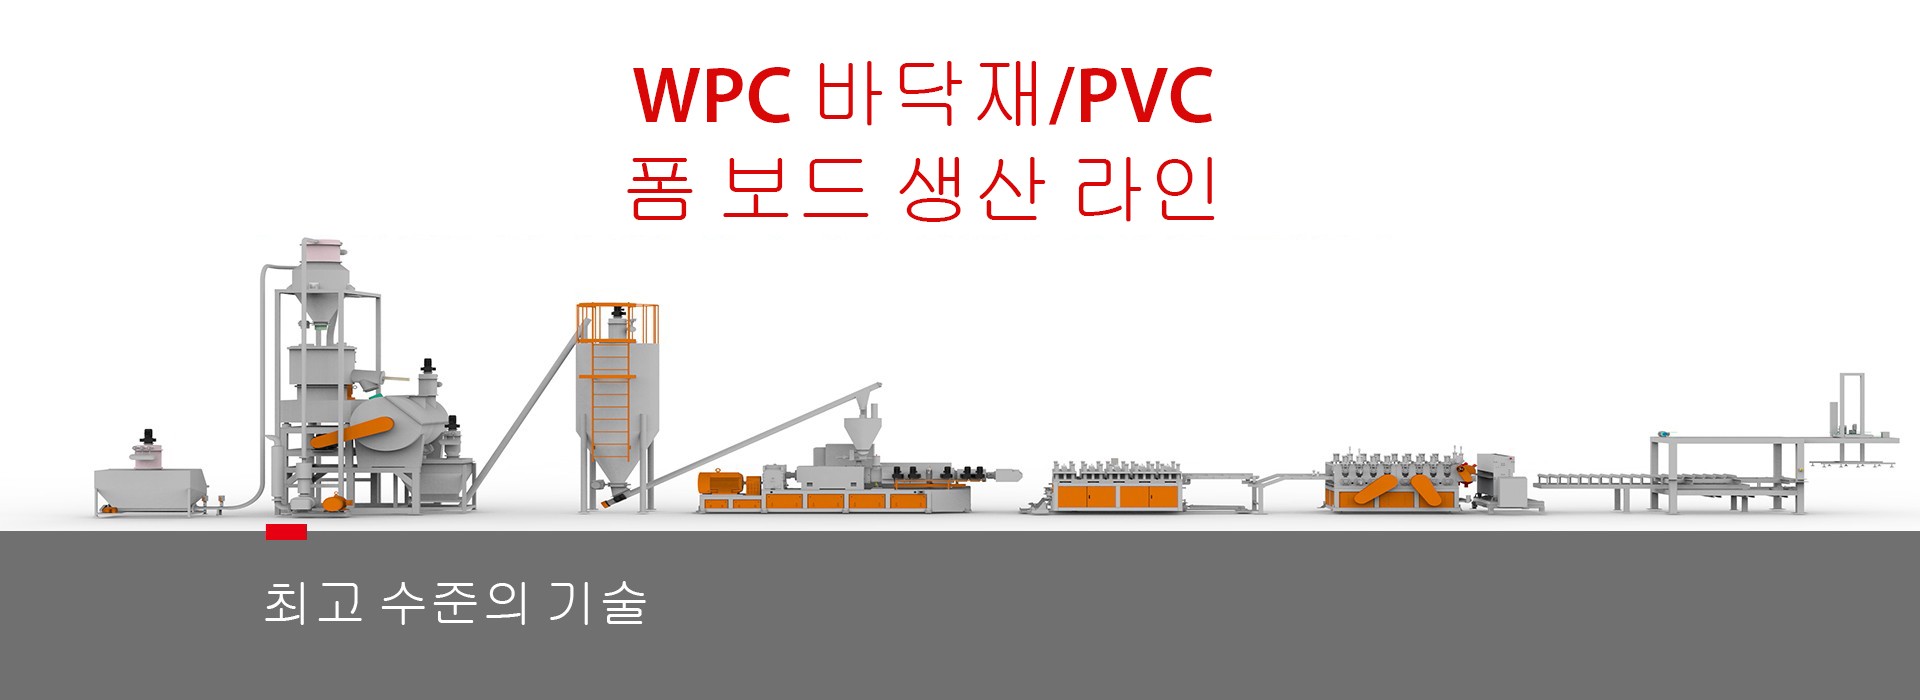 Linha de Produção de Placa de Espuma de Piso WPC/PVC